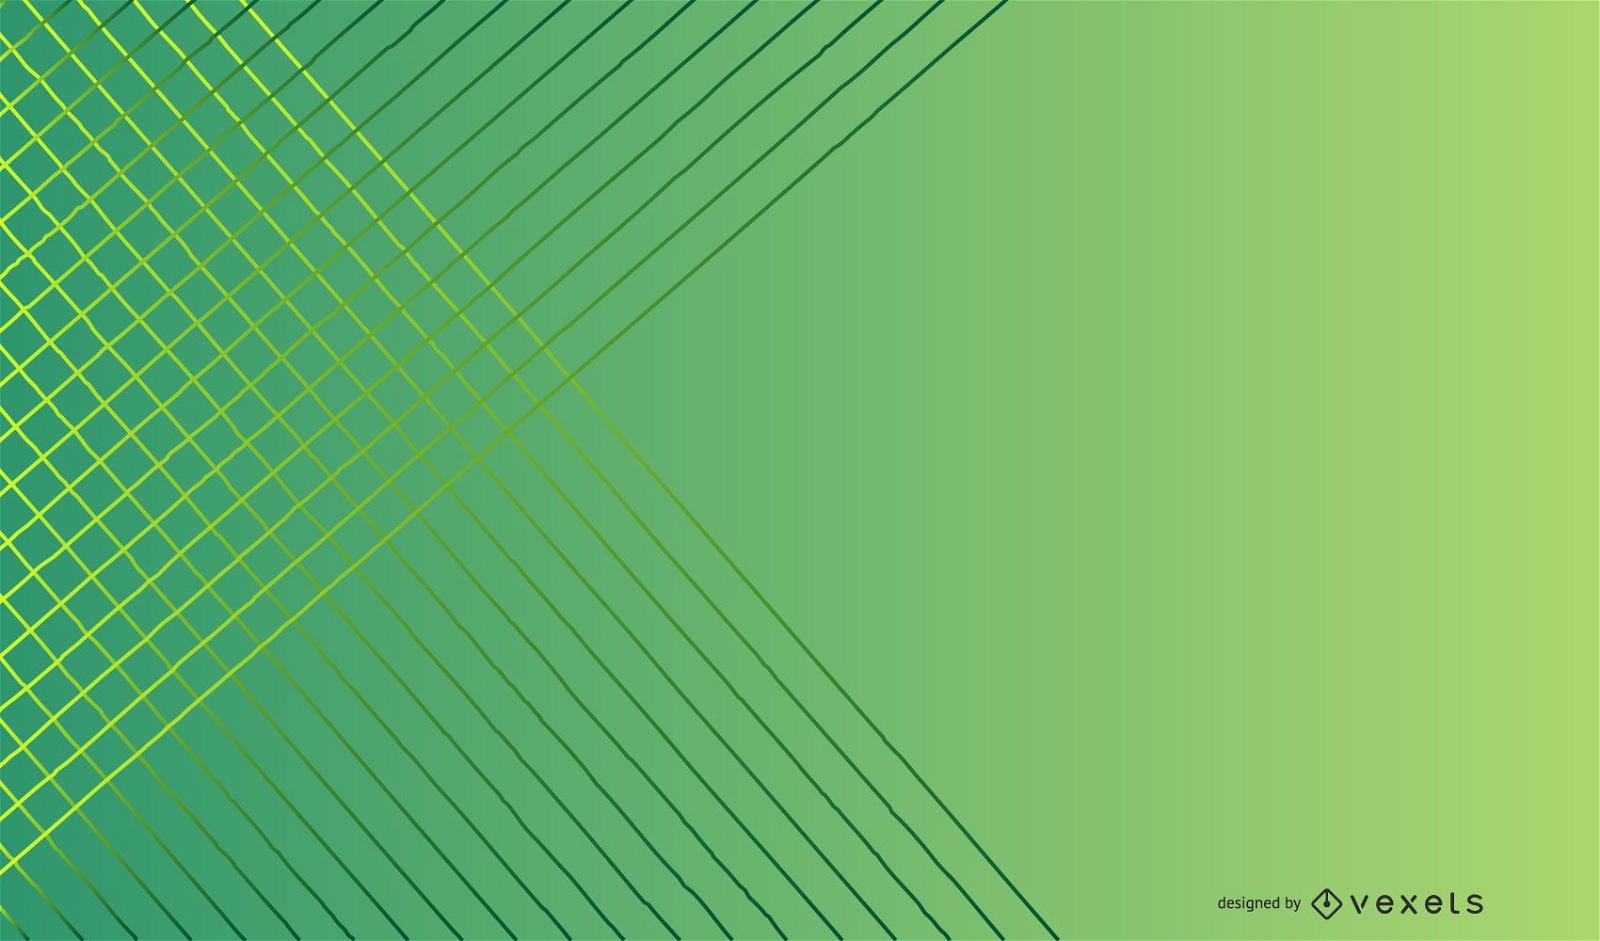 Green gradient lines background design - Vector download